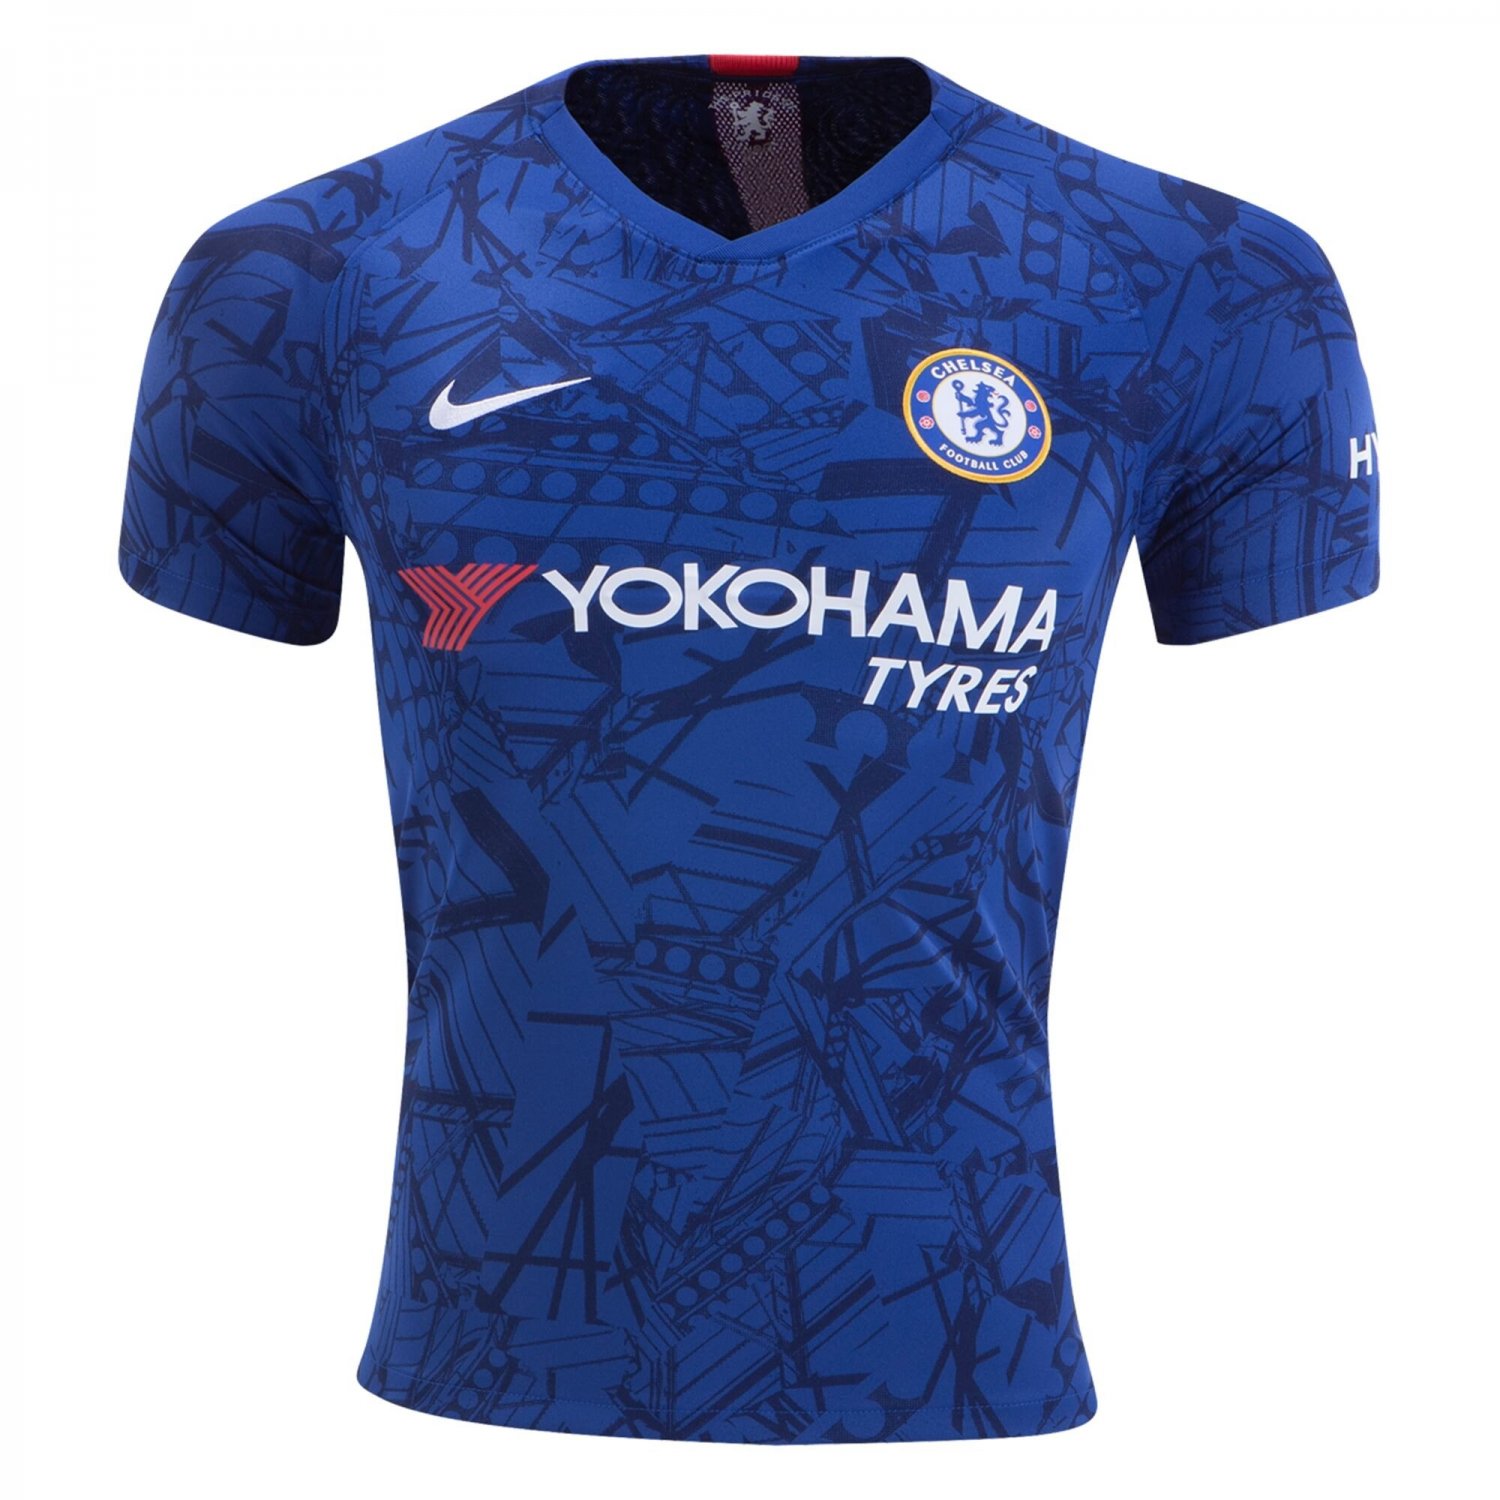 Chelsea Home î€€Soccerî€ î€€Jerseyî€ 2019 Men\'s Soocer Kit Stadium î€€Footballî€ Shirt ...